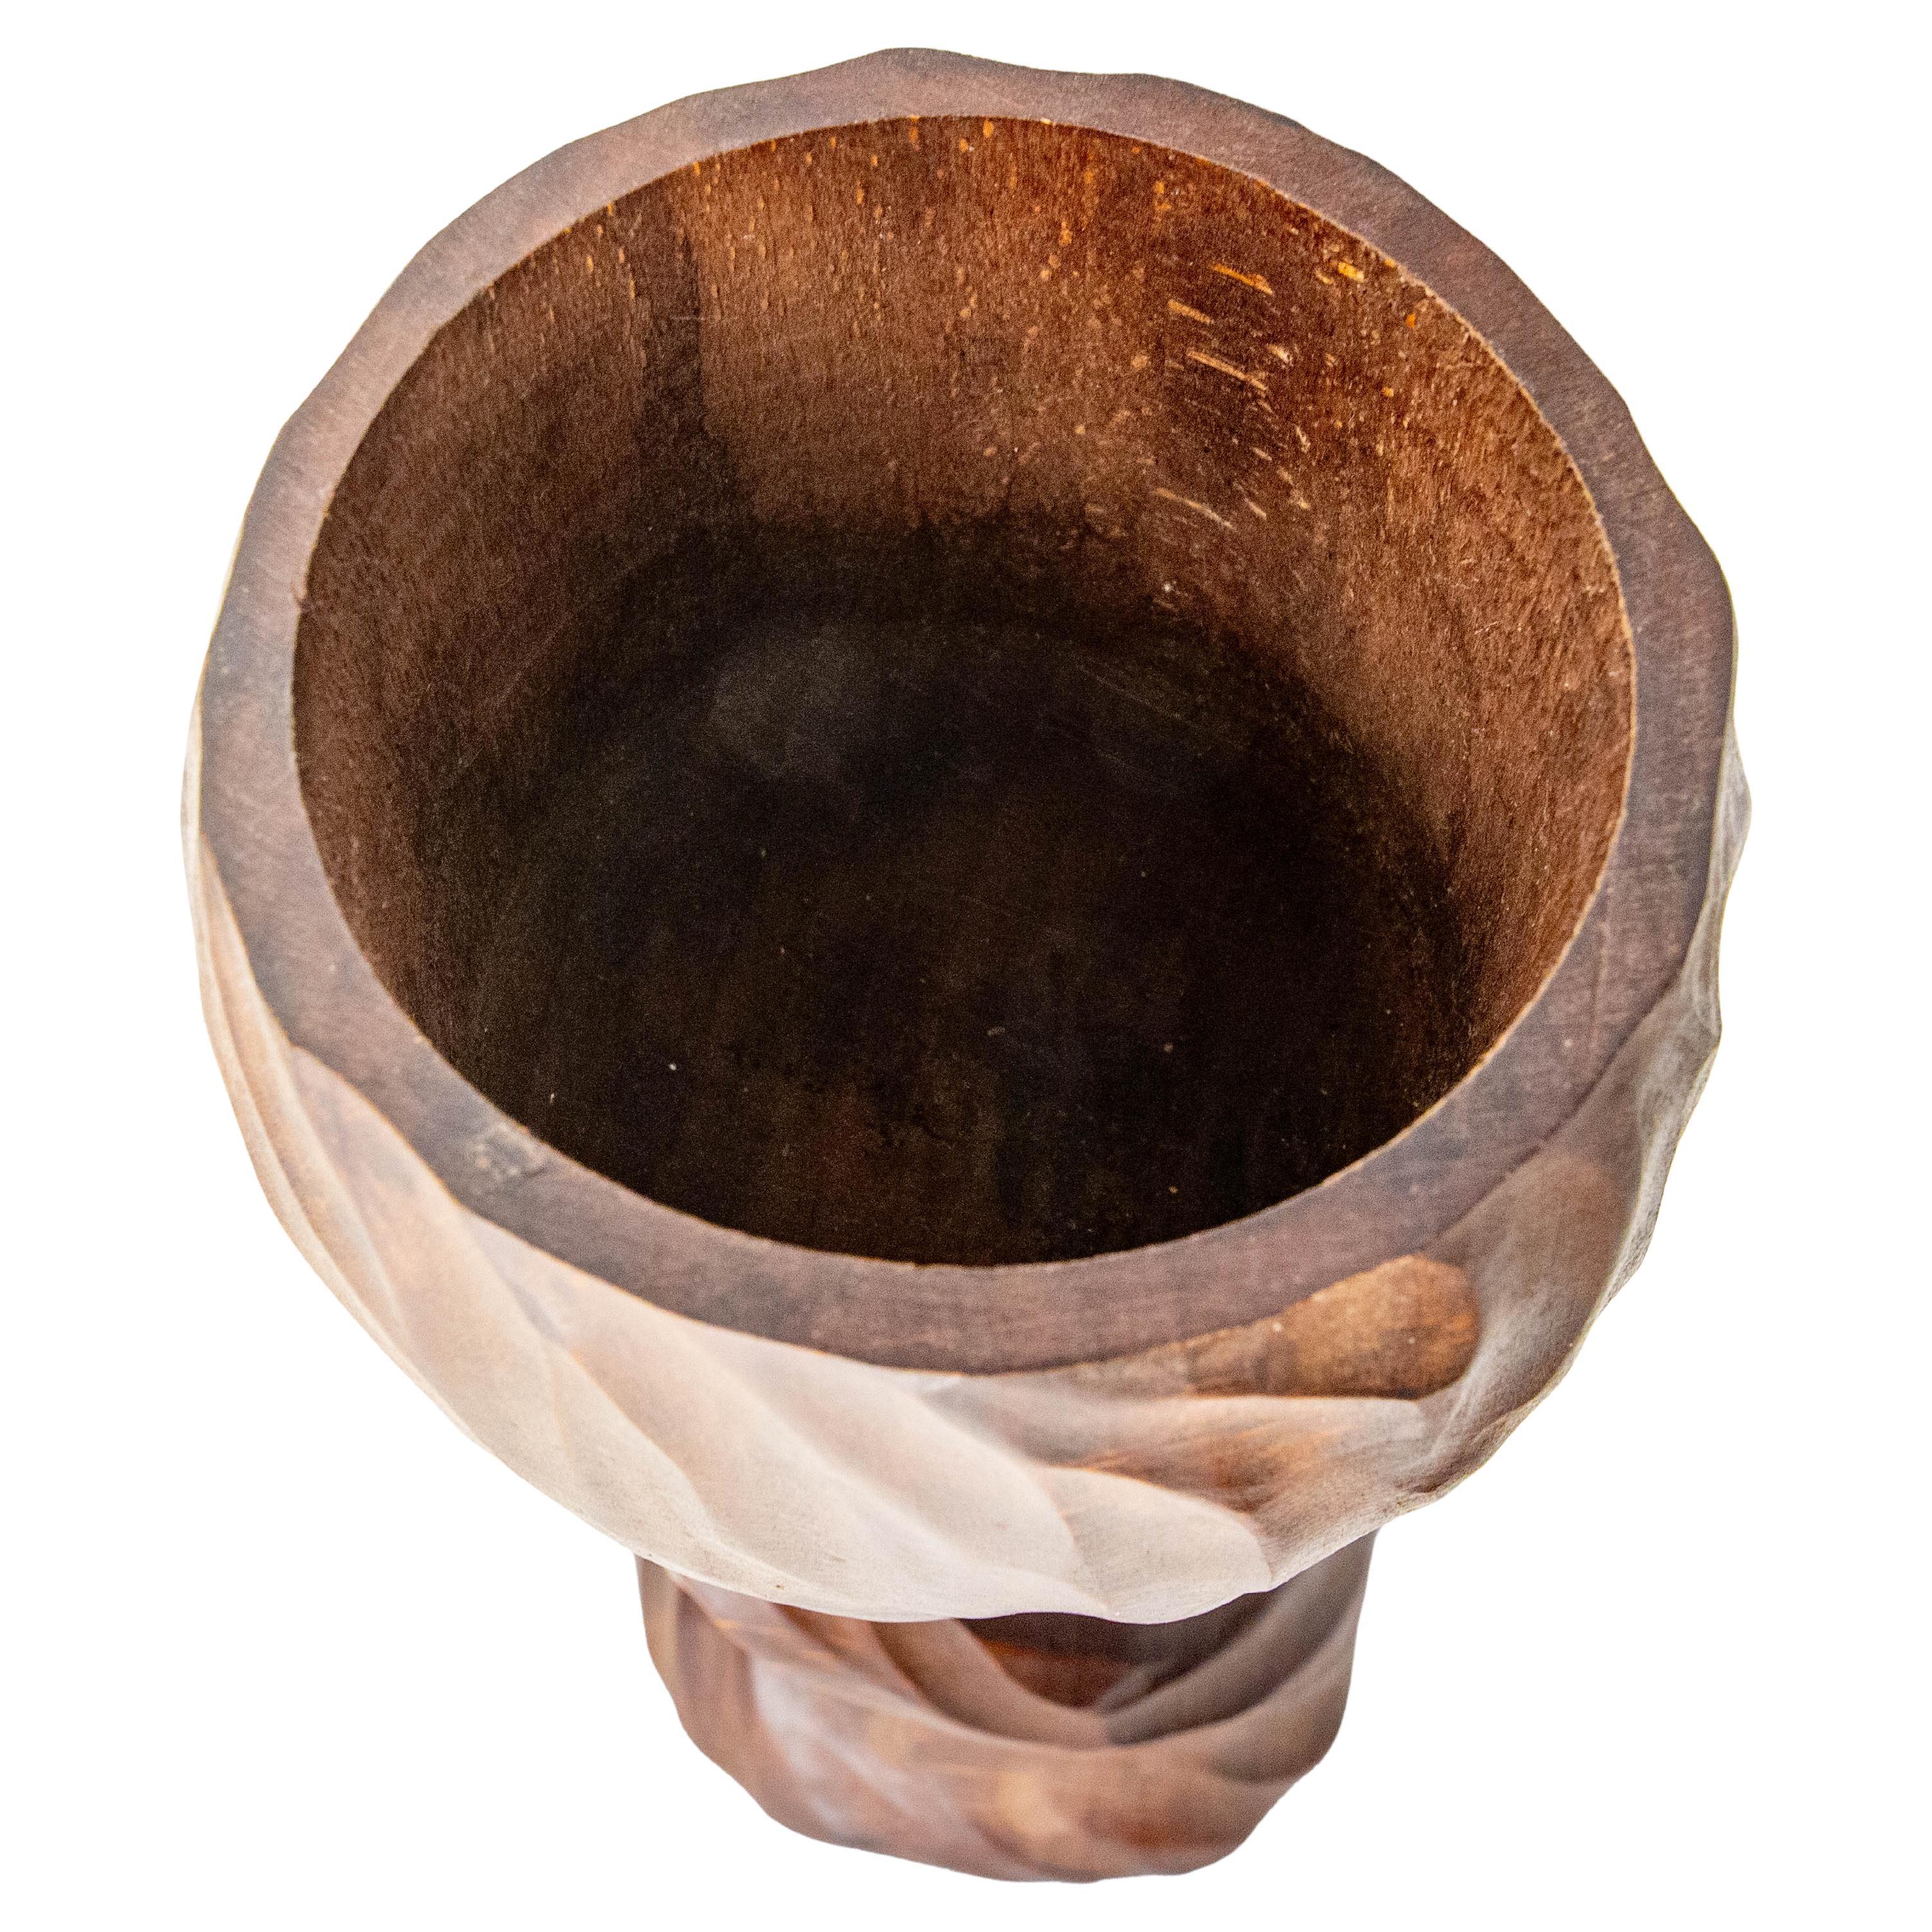 Pot à tabac en bois exotique français fabriqué vers 1960-1970.
Ce type de jarre était utilisé pour conserver le tabac dans un été d'humidification idéale. Cela explique la présence d'une petite boîte en plastique percée de trous dans laquelle le